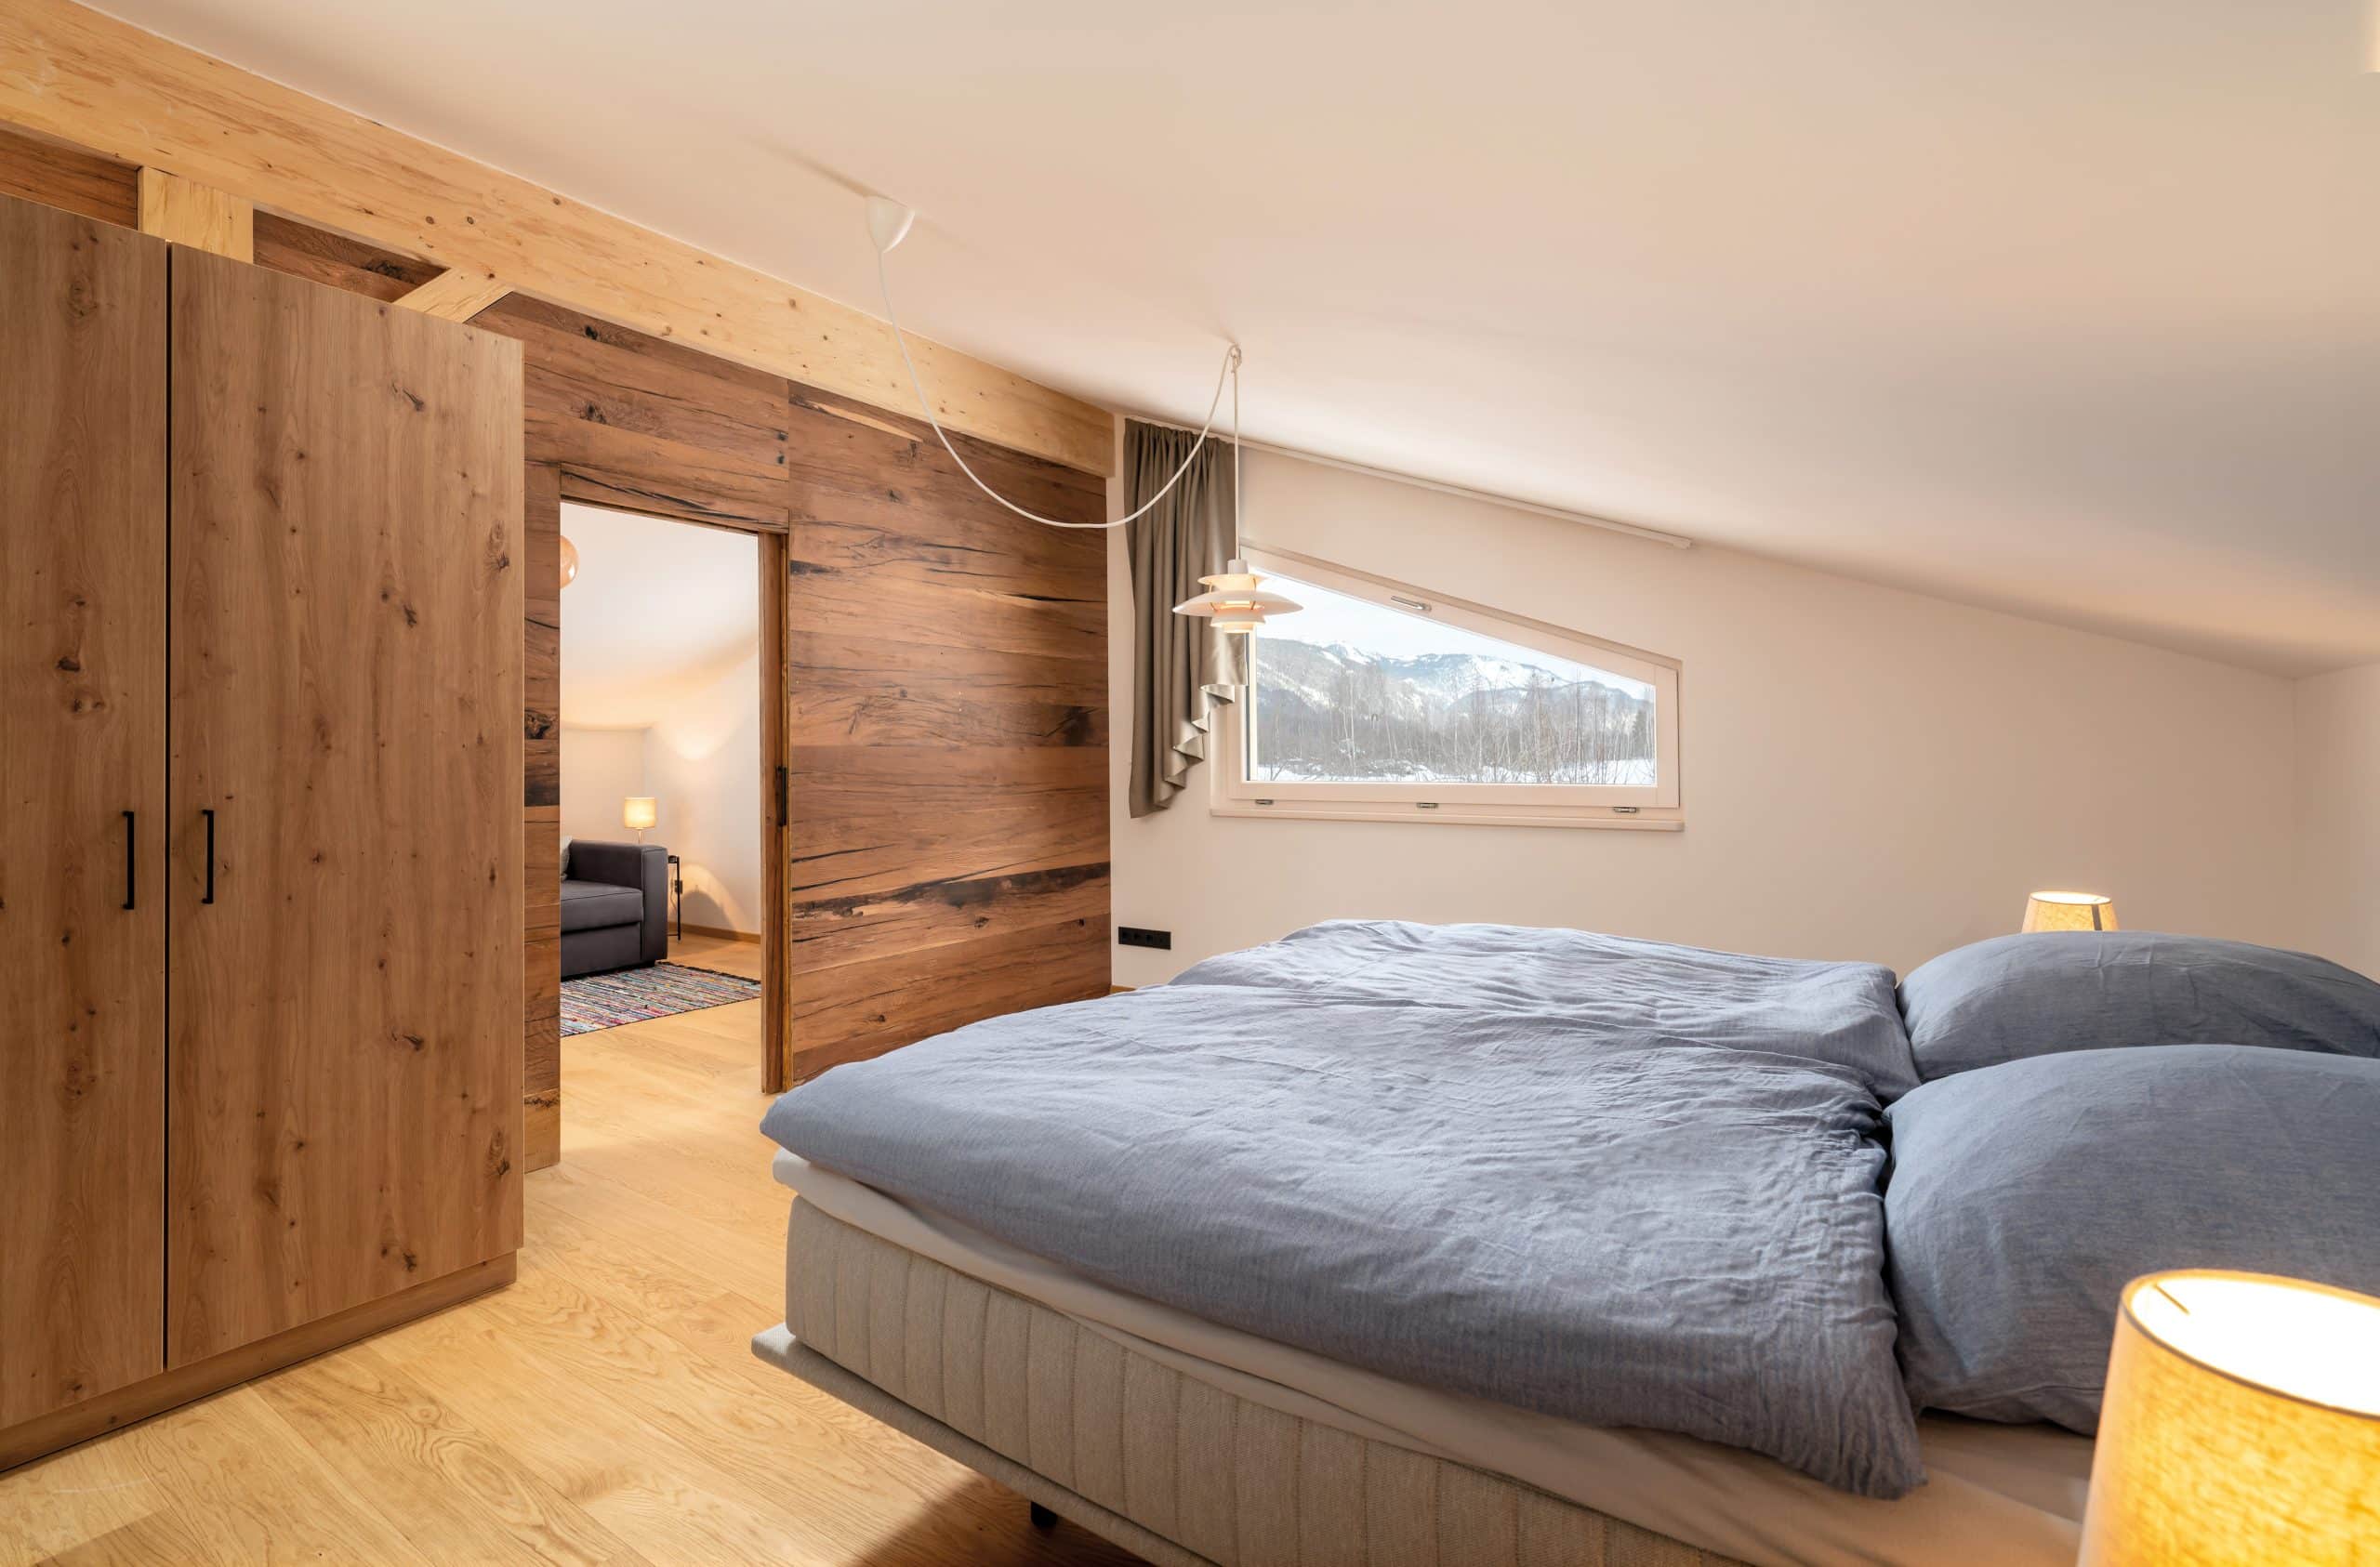 Regnauer zeigt ein Schlafzimmer aus Holz mit Kleiderschrank, Vorhang, und einem Doppelbett mit grauem Überzug.